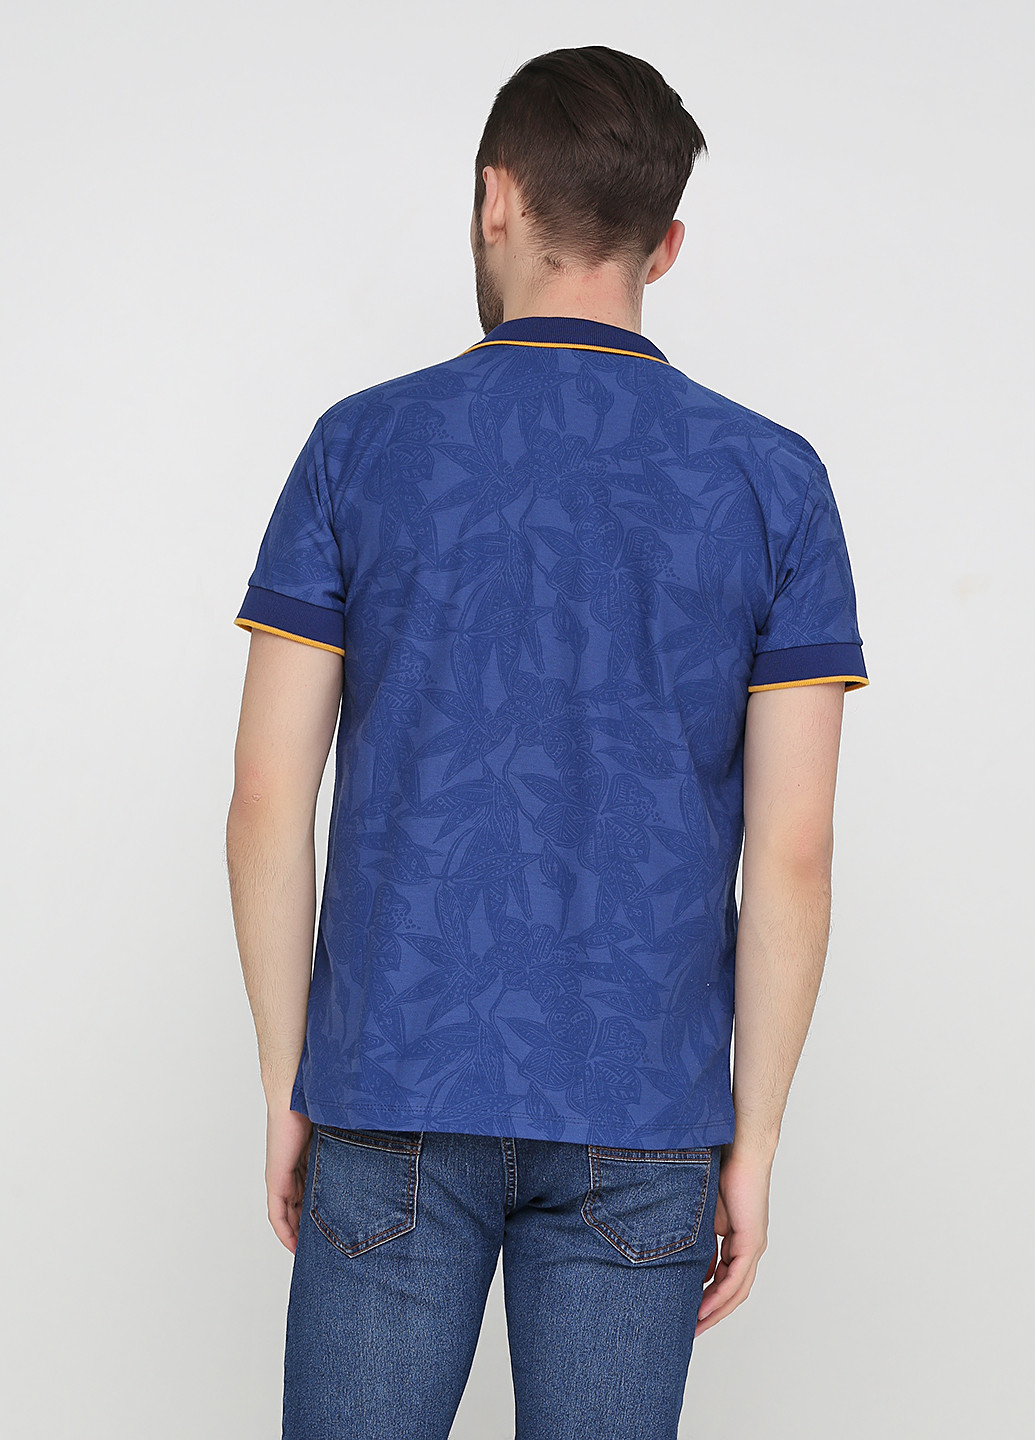 Синяя футболка-поло для мужчин Chiarotex с абстрактным узором